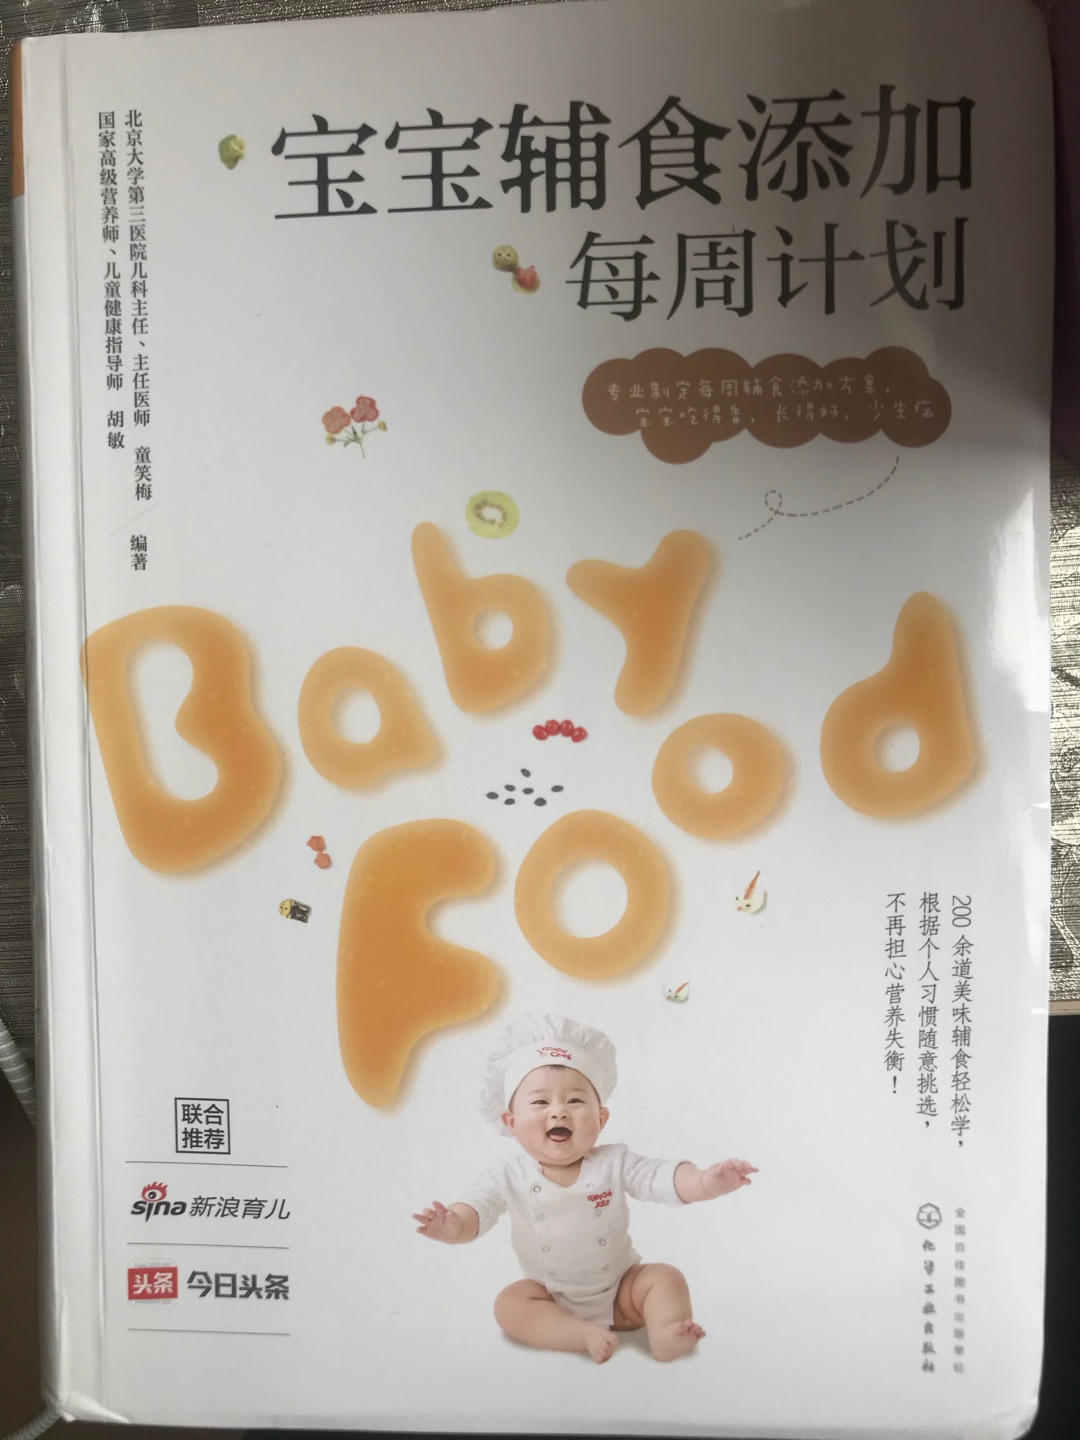 给宝宝添加辅食是让人头痛的事情，这本书解决了一切烦恼